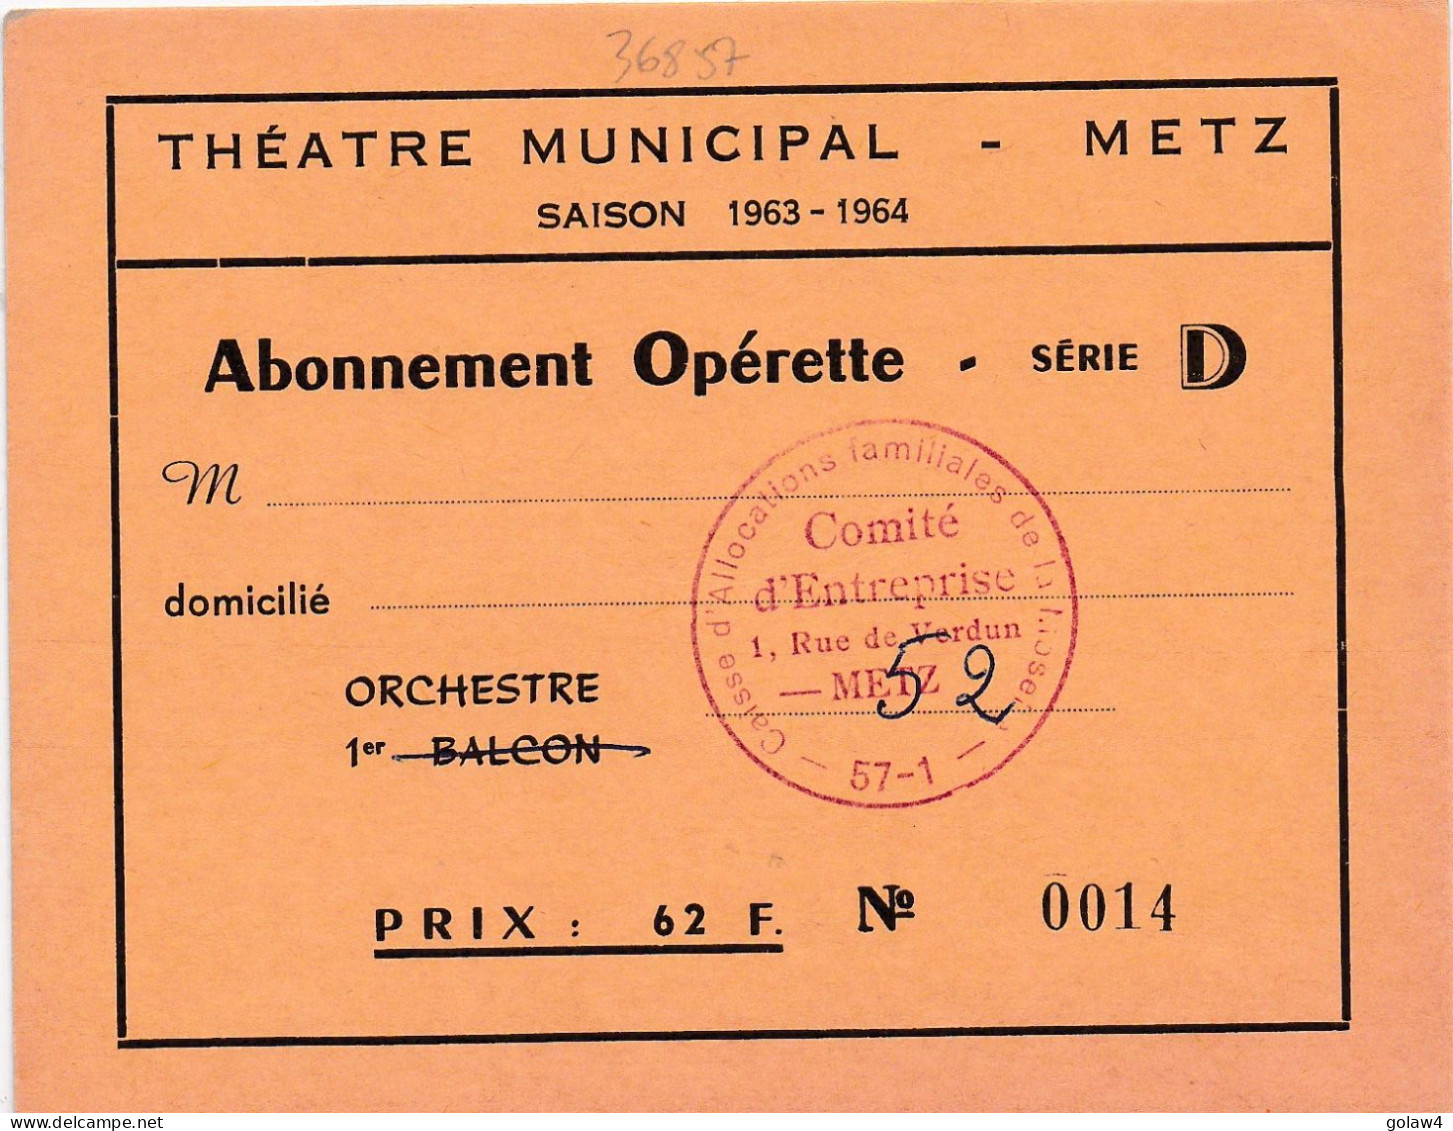 36857 THEATRE MUNICIPAL METZ SAISON 1963 1964 ABONNEMENT OPERETTE SERIE ORCHESTRE CAISSE ALLOCATIONS FAMILIALLES MOSELLE - Tickets - Entradas